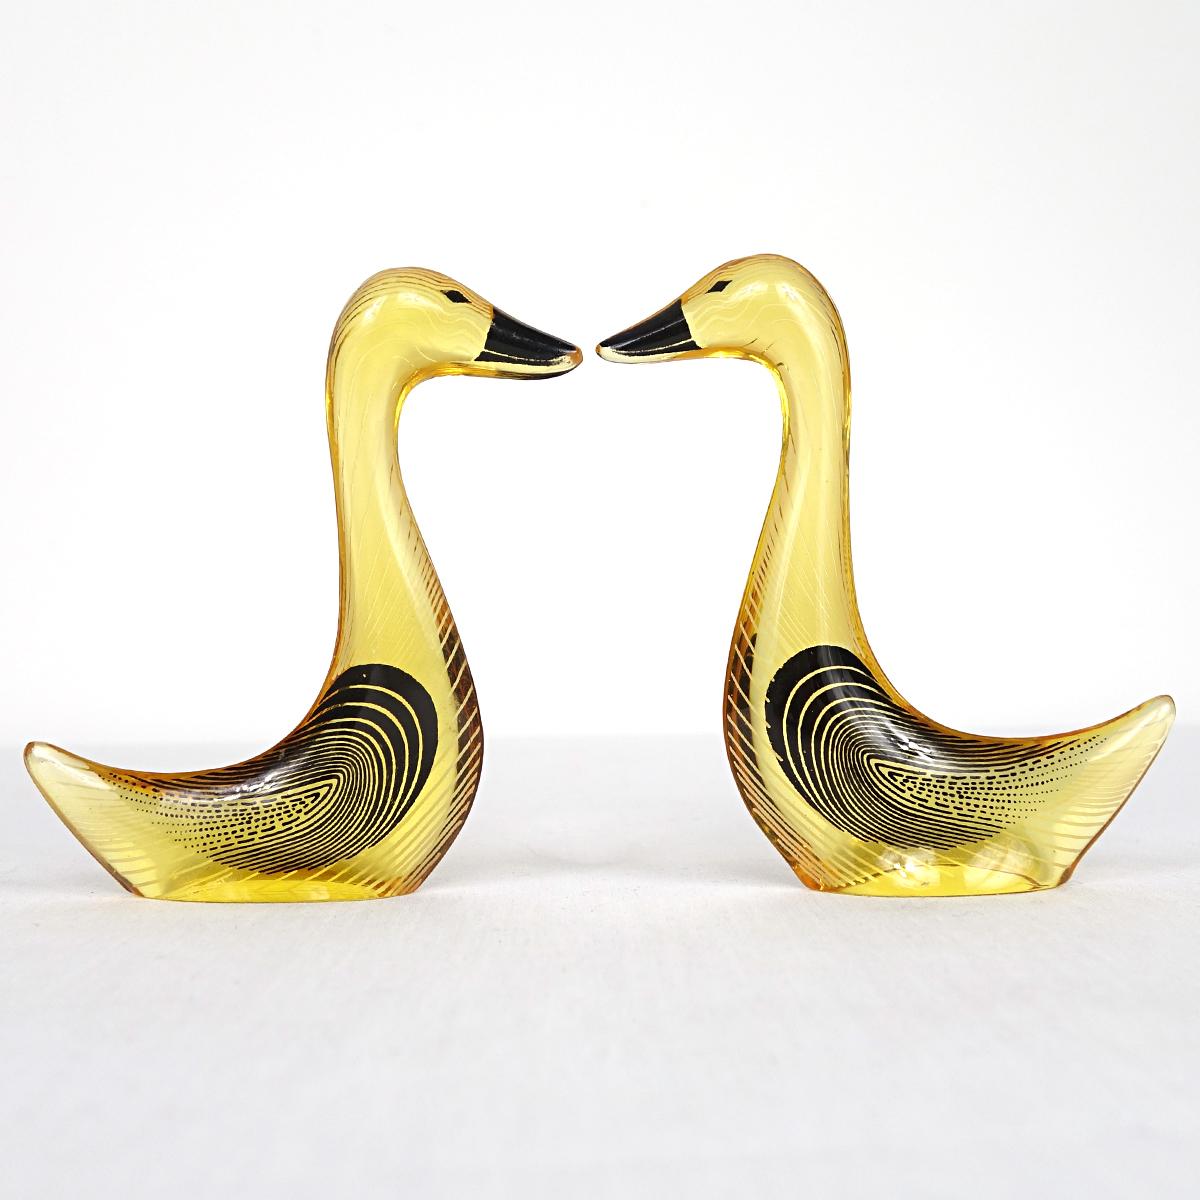 Ein Paar Gänse, entworfen und hergestellt von Abraham Palatnik. 

Der brasilianische Künstler Abraham Palatnik (1928 - 2020) war der Begründer der technologischen Bewegung in der brasilianischen Kunst und ein Pionier der kinetischen